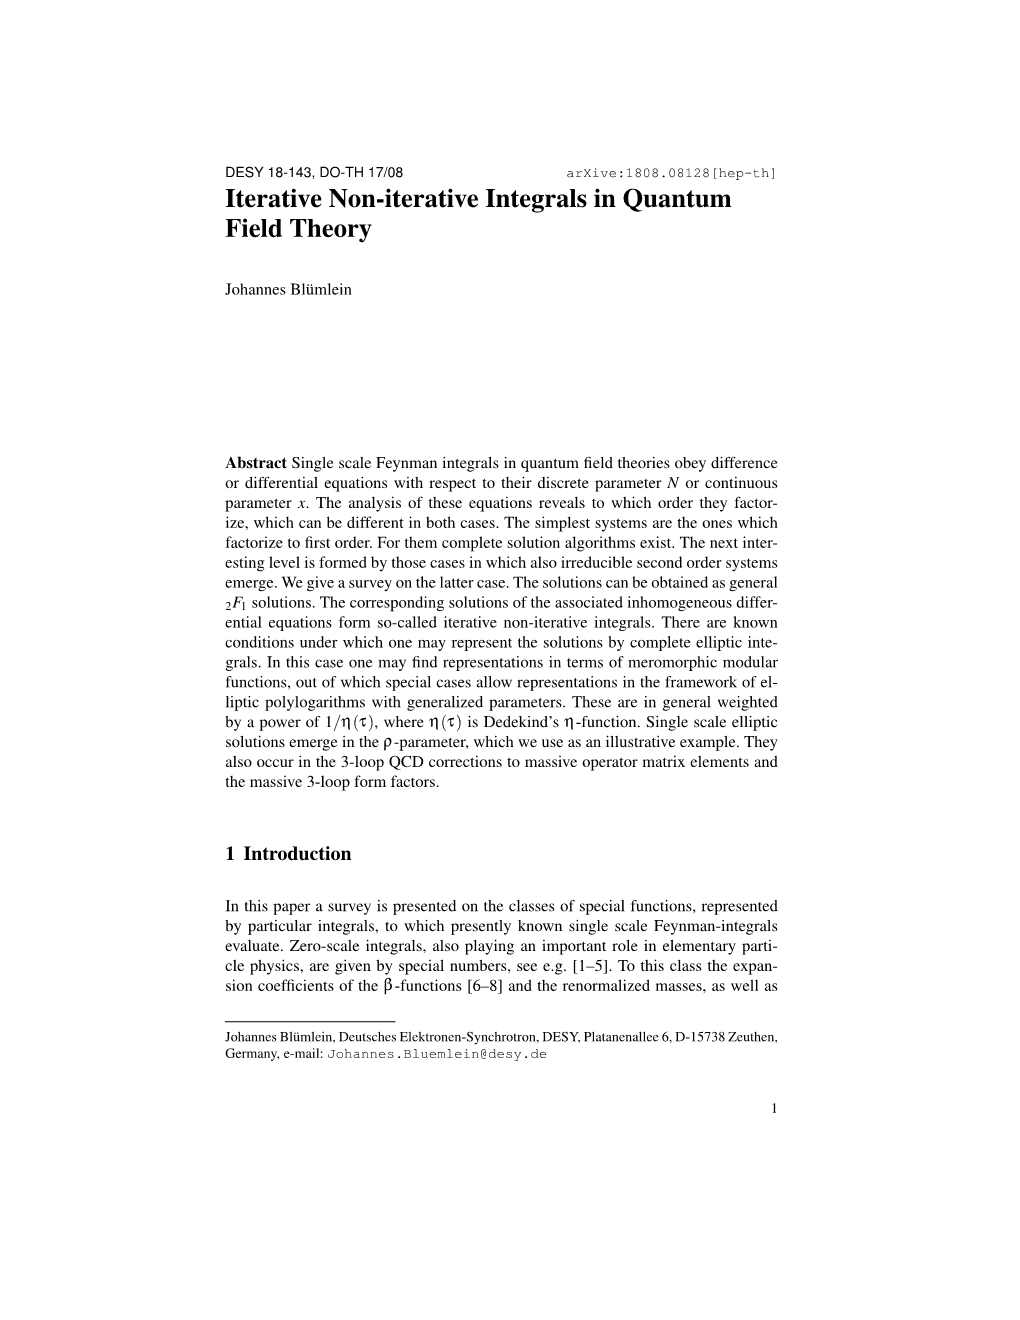 Iterative Non-Iterative Integrals in Quantum Field Theory